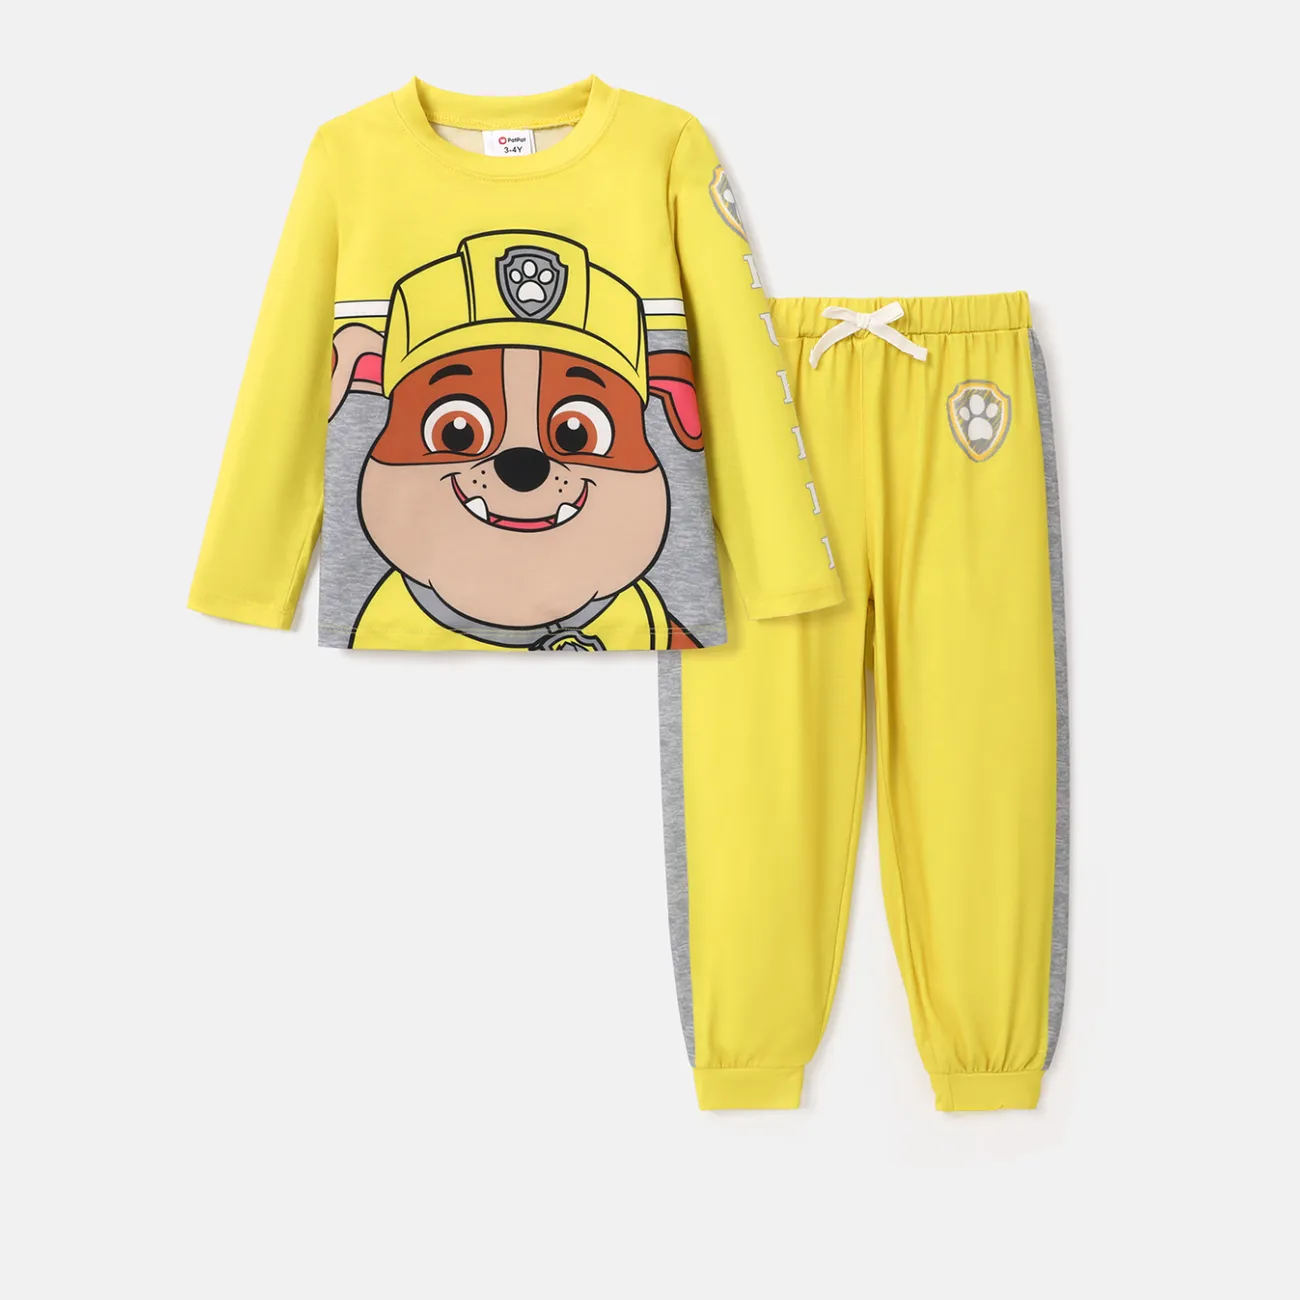 PAW Patrol Toddler Boy/Girl 2-Piece Cartoon Print Top and Pants Set Yellow big image 1